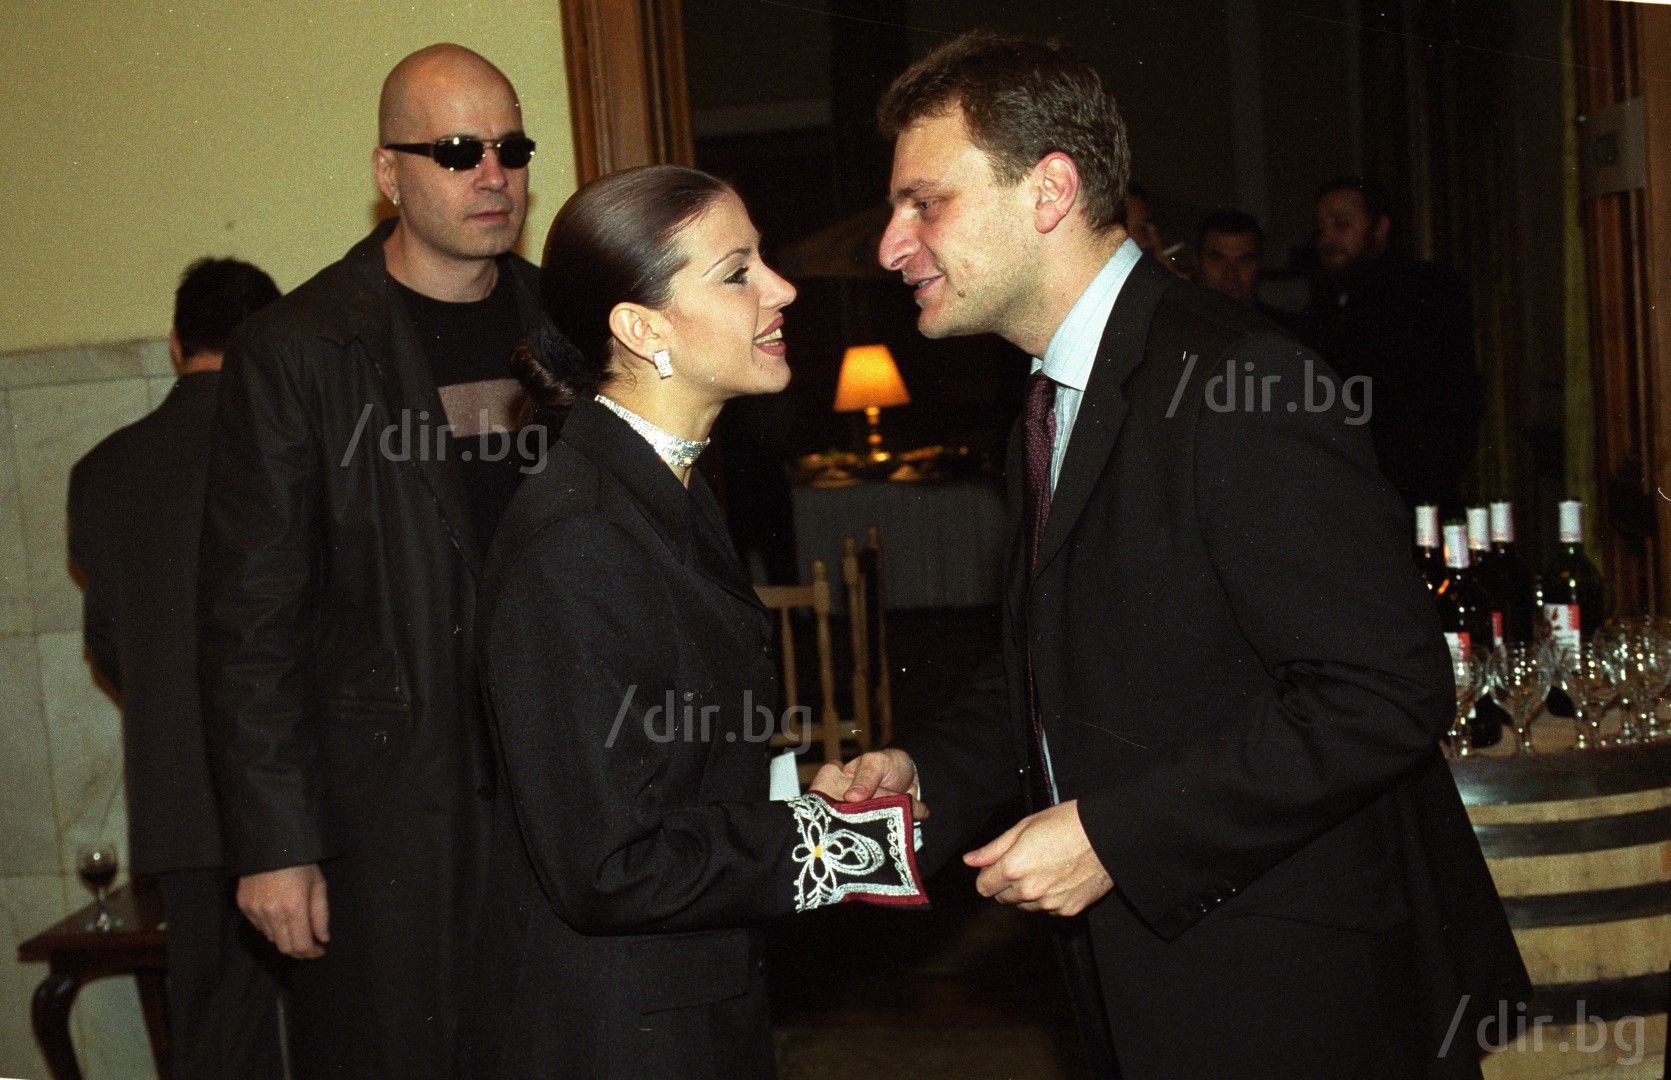 Слави Трифонова и определаната като голямата му любов Магдалена Ангелова на рожден ден на Петък Курумбашев през 2001 г.